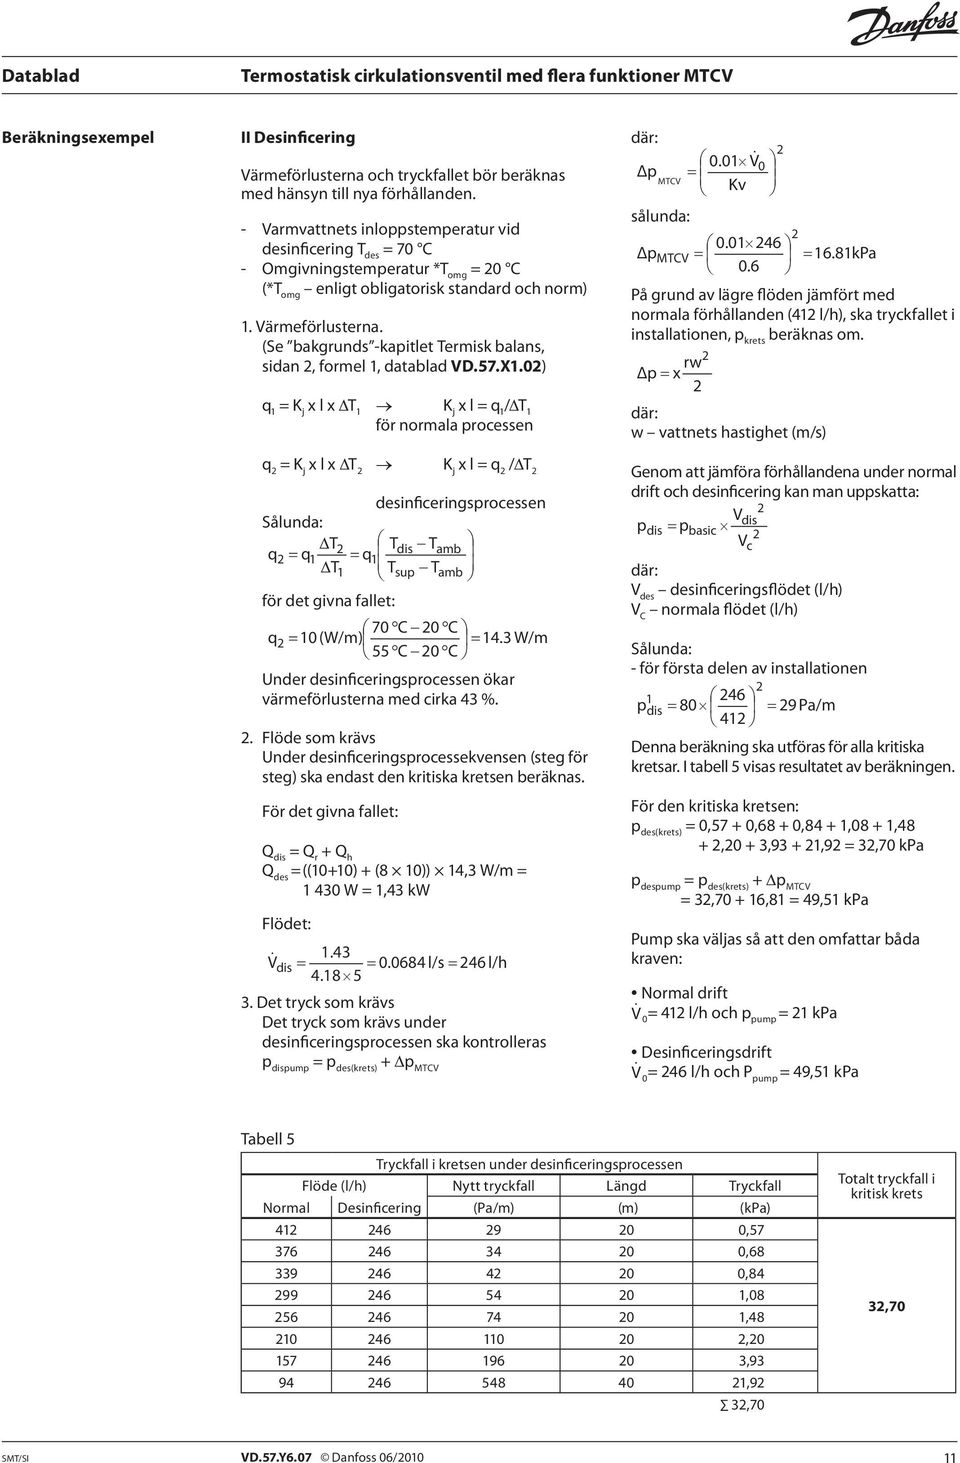 (Se bakgrunds -kapitlet Termisk balans, sidan, formel 1, datablad VD.57.X1.